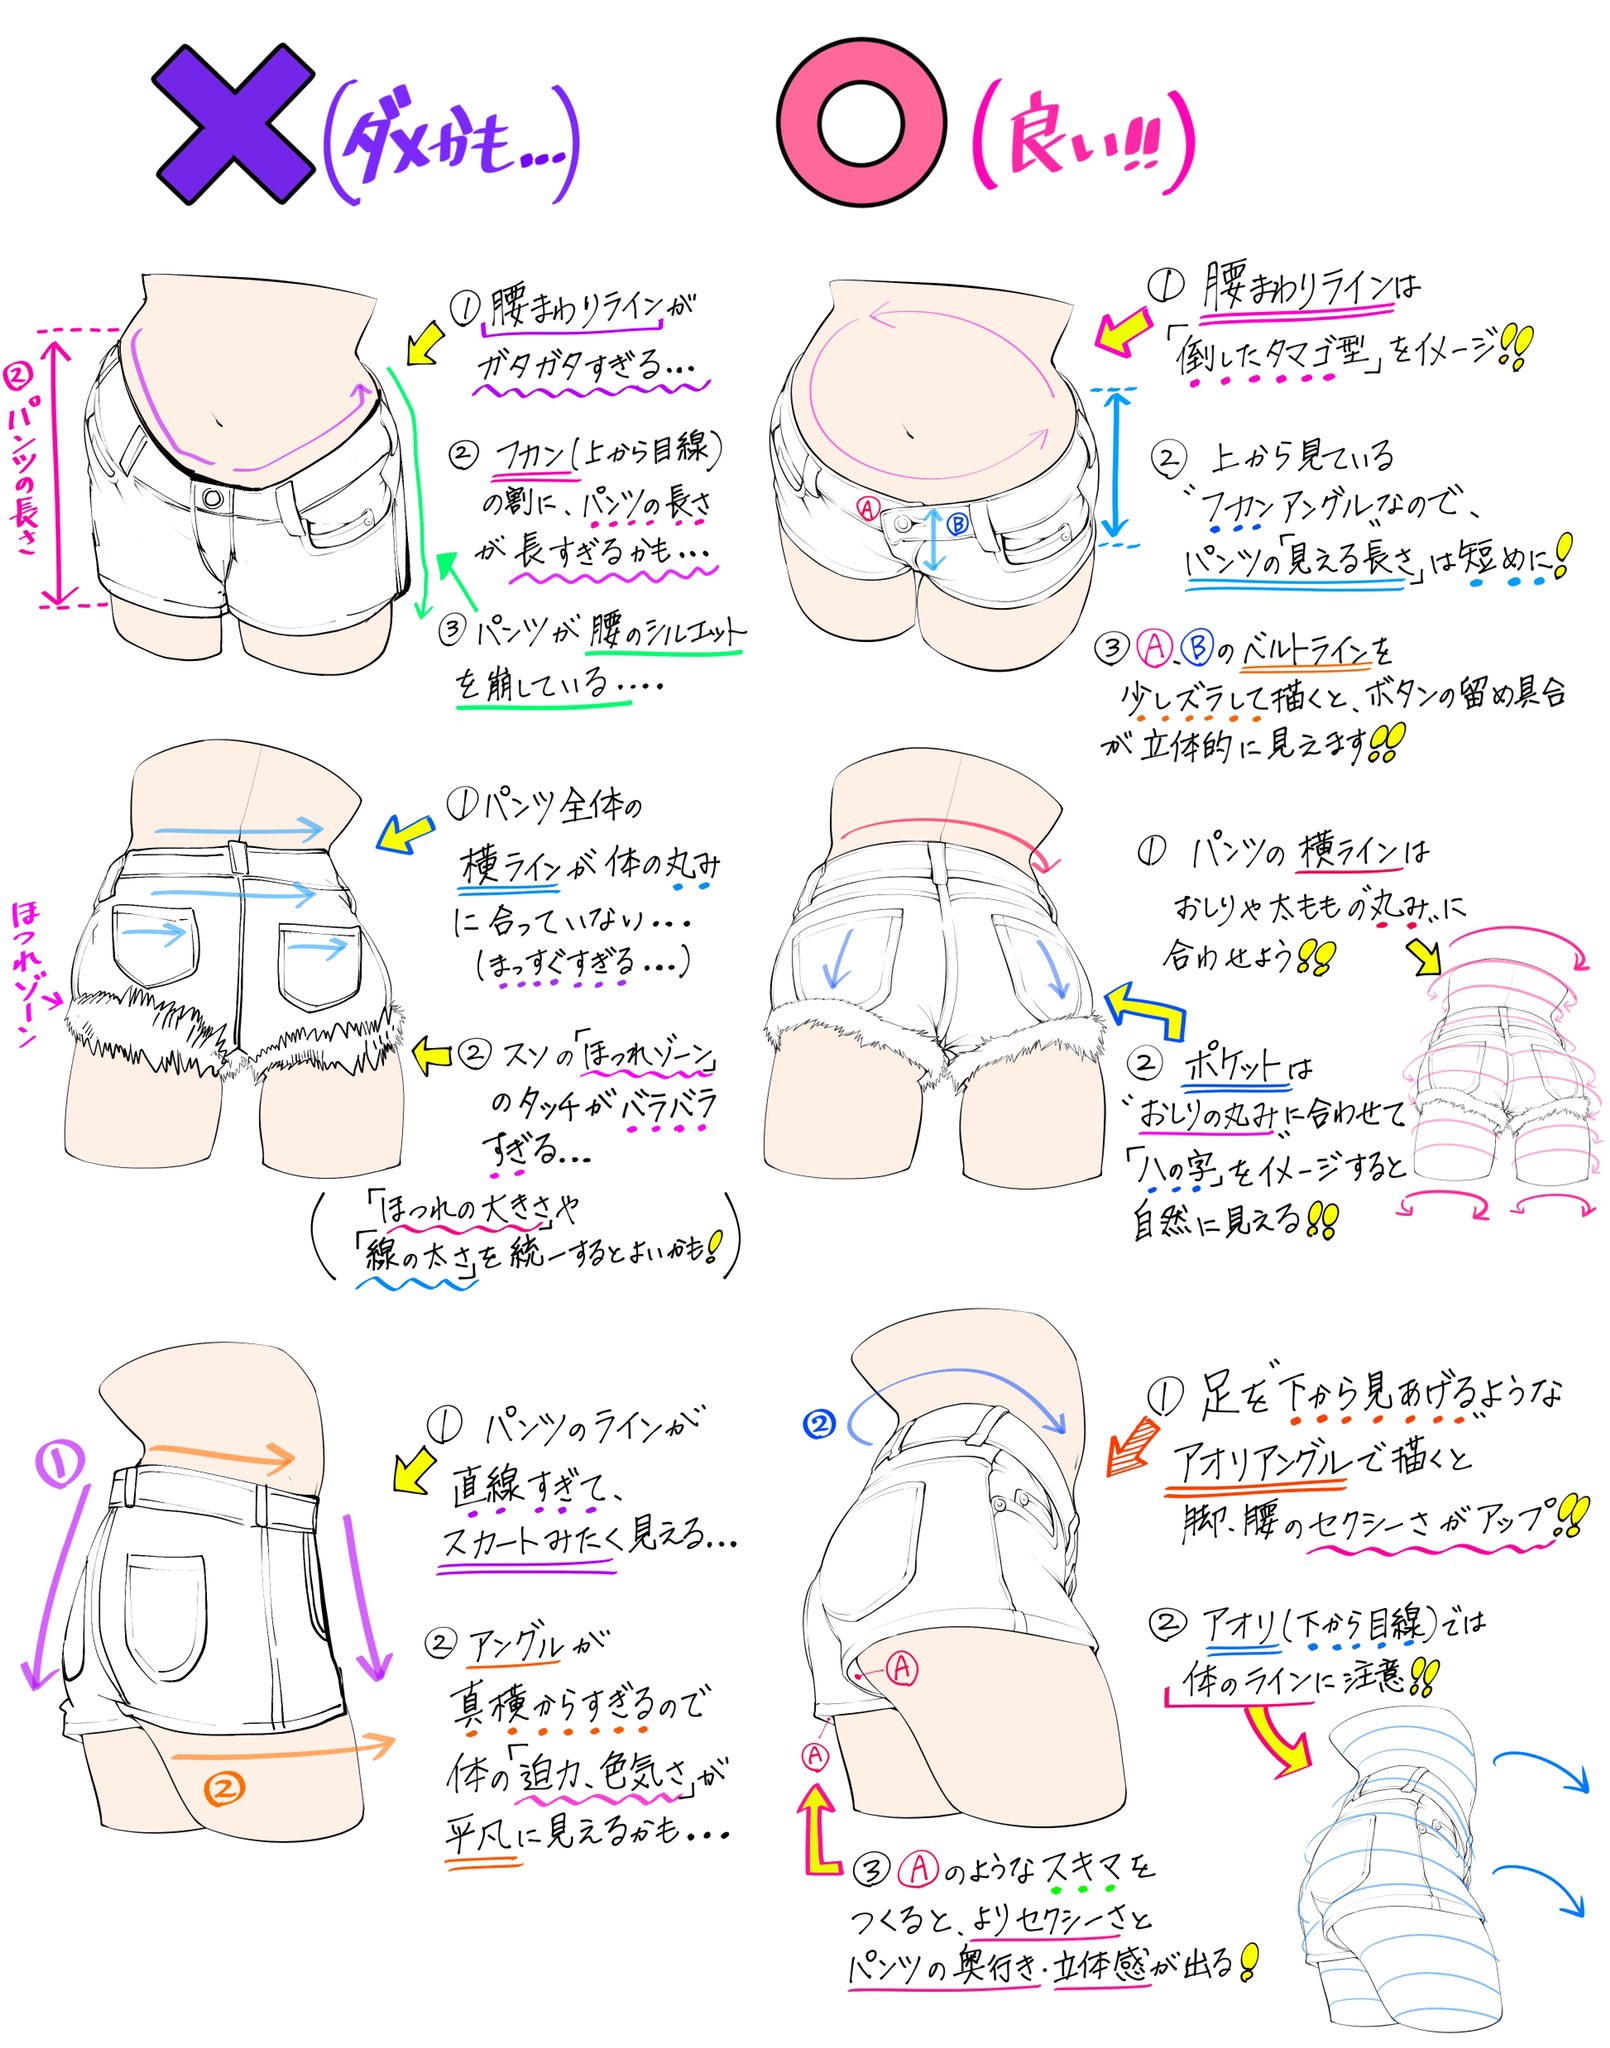 吉村拓也 イラスト講座 ホットパンツの描き方 ジーンズ 系を綺麗に描くときの ダメかも 良いかも T Co hwfdj8hf Twitter